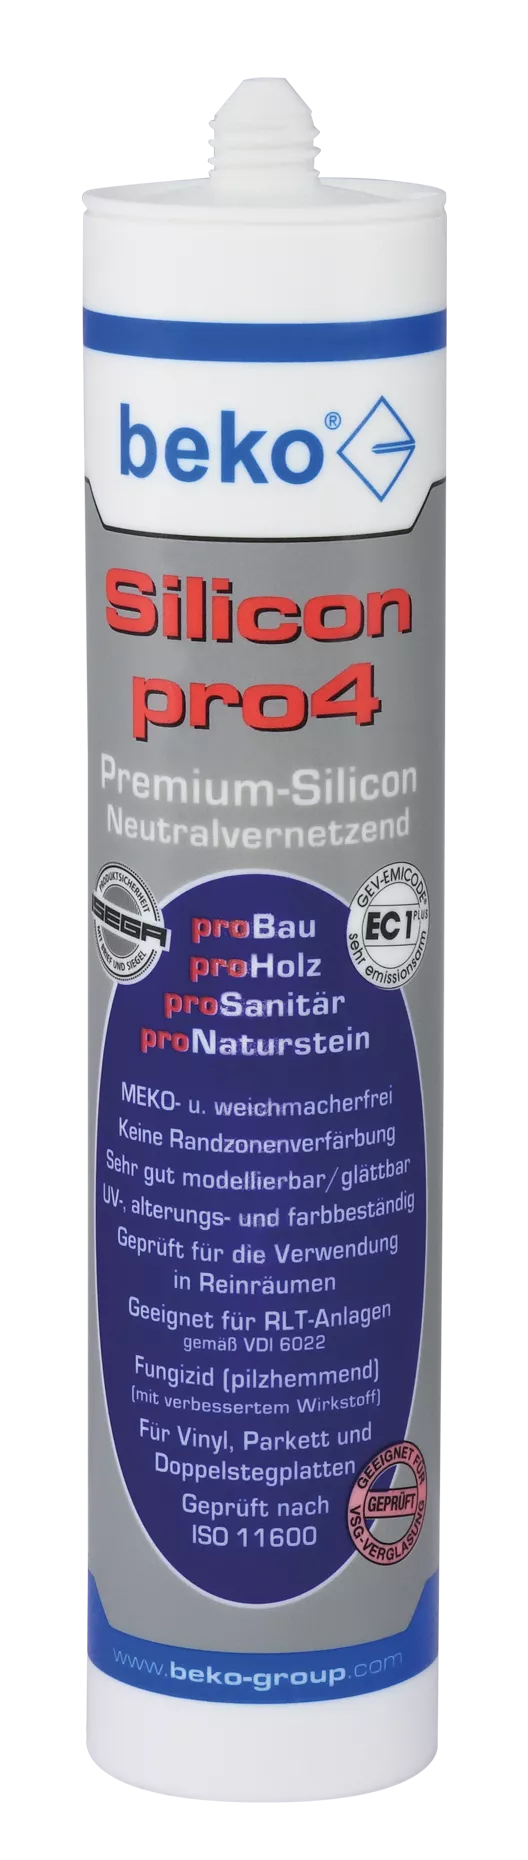 beko Silicon pro4 Premium